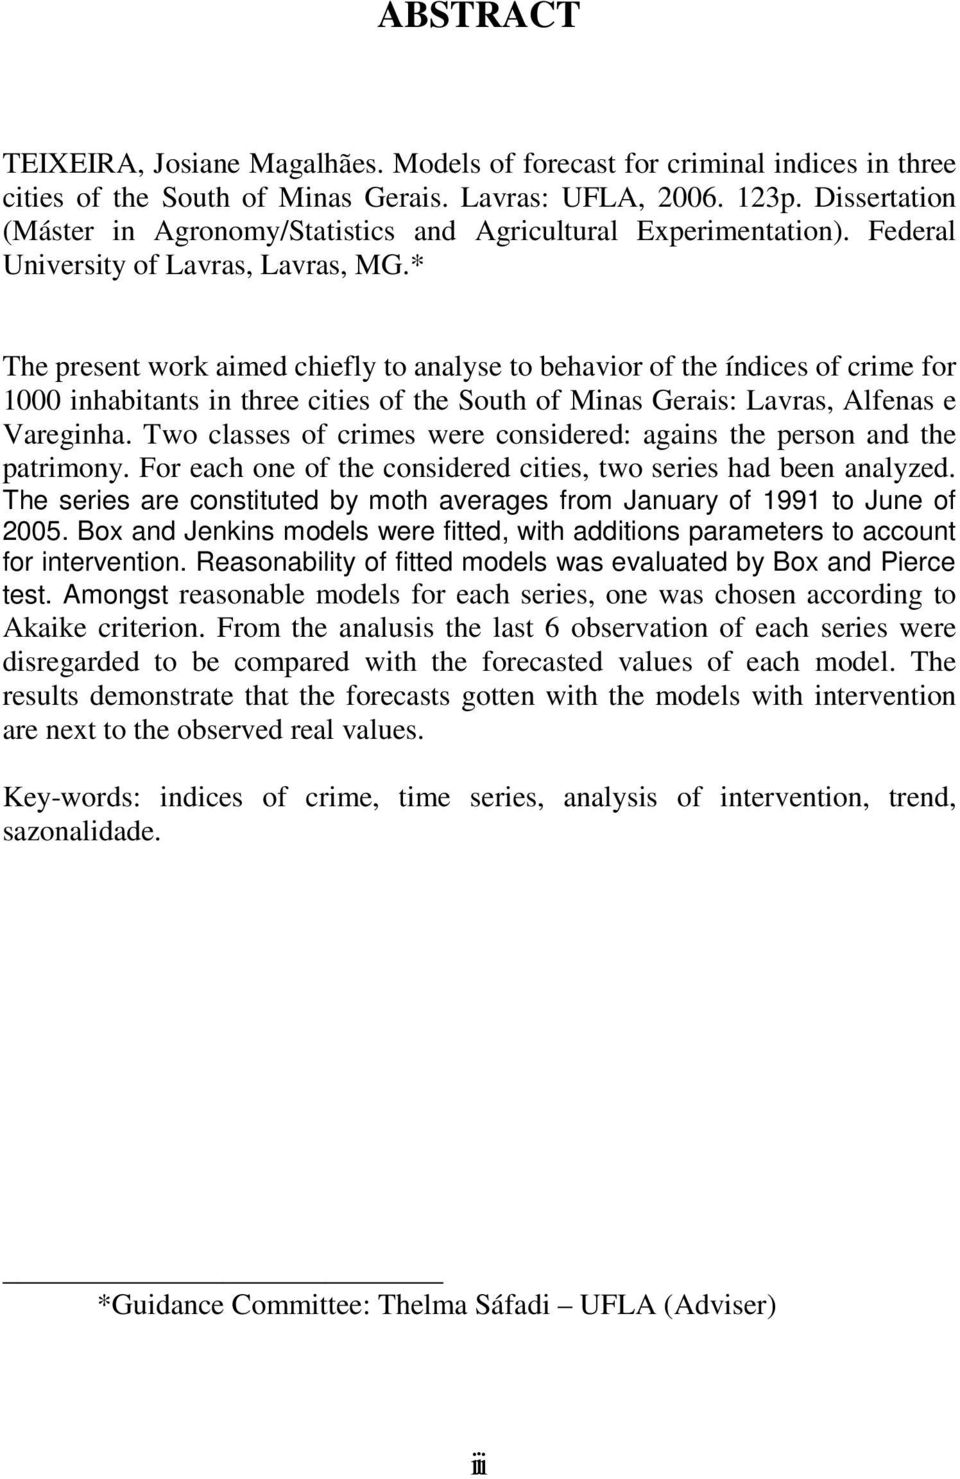 * The presen work aimed chiefly o analyse o behavior of he índices of crime for 000 inhabians in hree ciies of he Souh of Minas Gerais: Lavras, Alfenas e Vareginha.